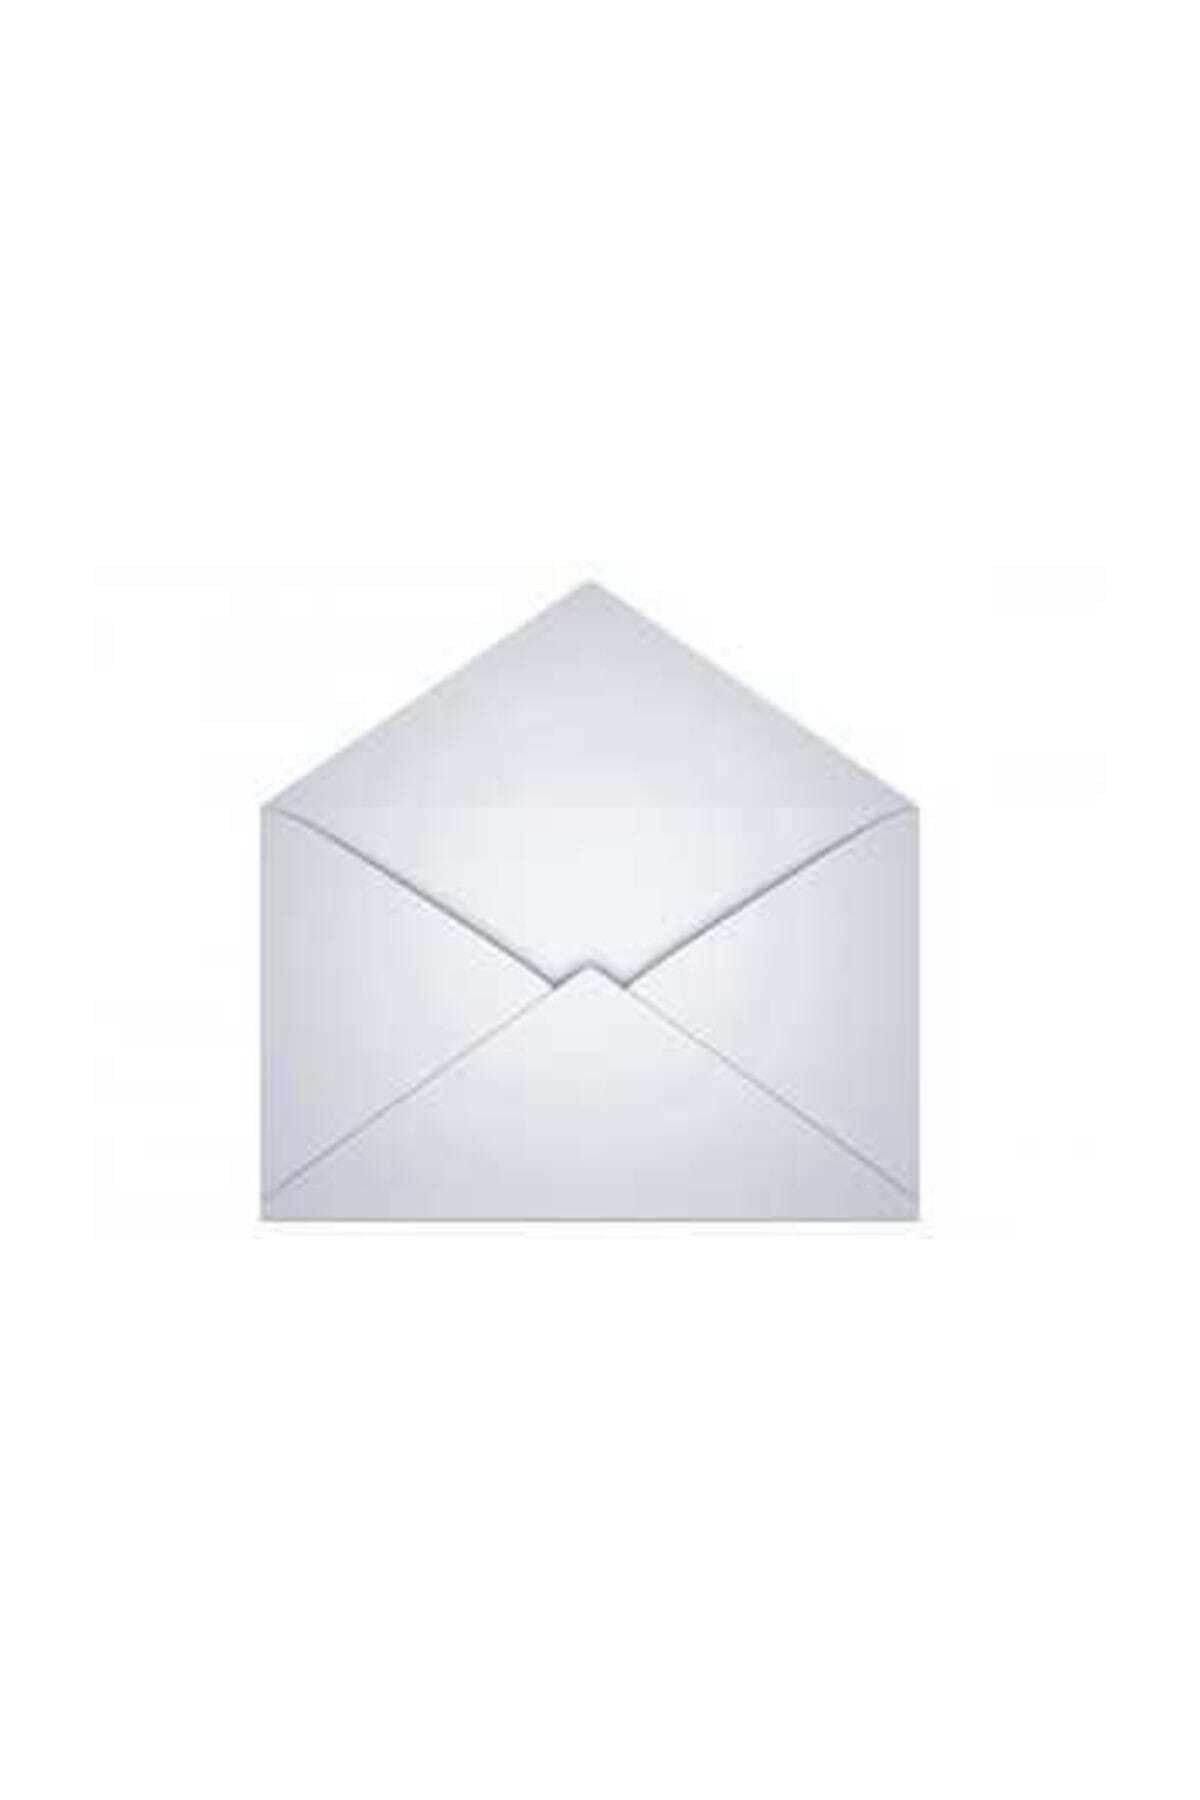 ASİL DOĞAN Mektup Zarfı - Para Zarfı - Takı Zarfı 11,4x16,2cm-100 Adet Beyaz (silikonlu) 70gr Kağıt